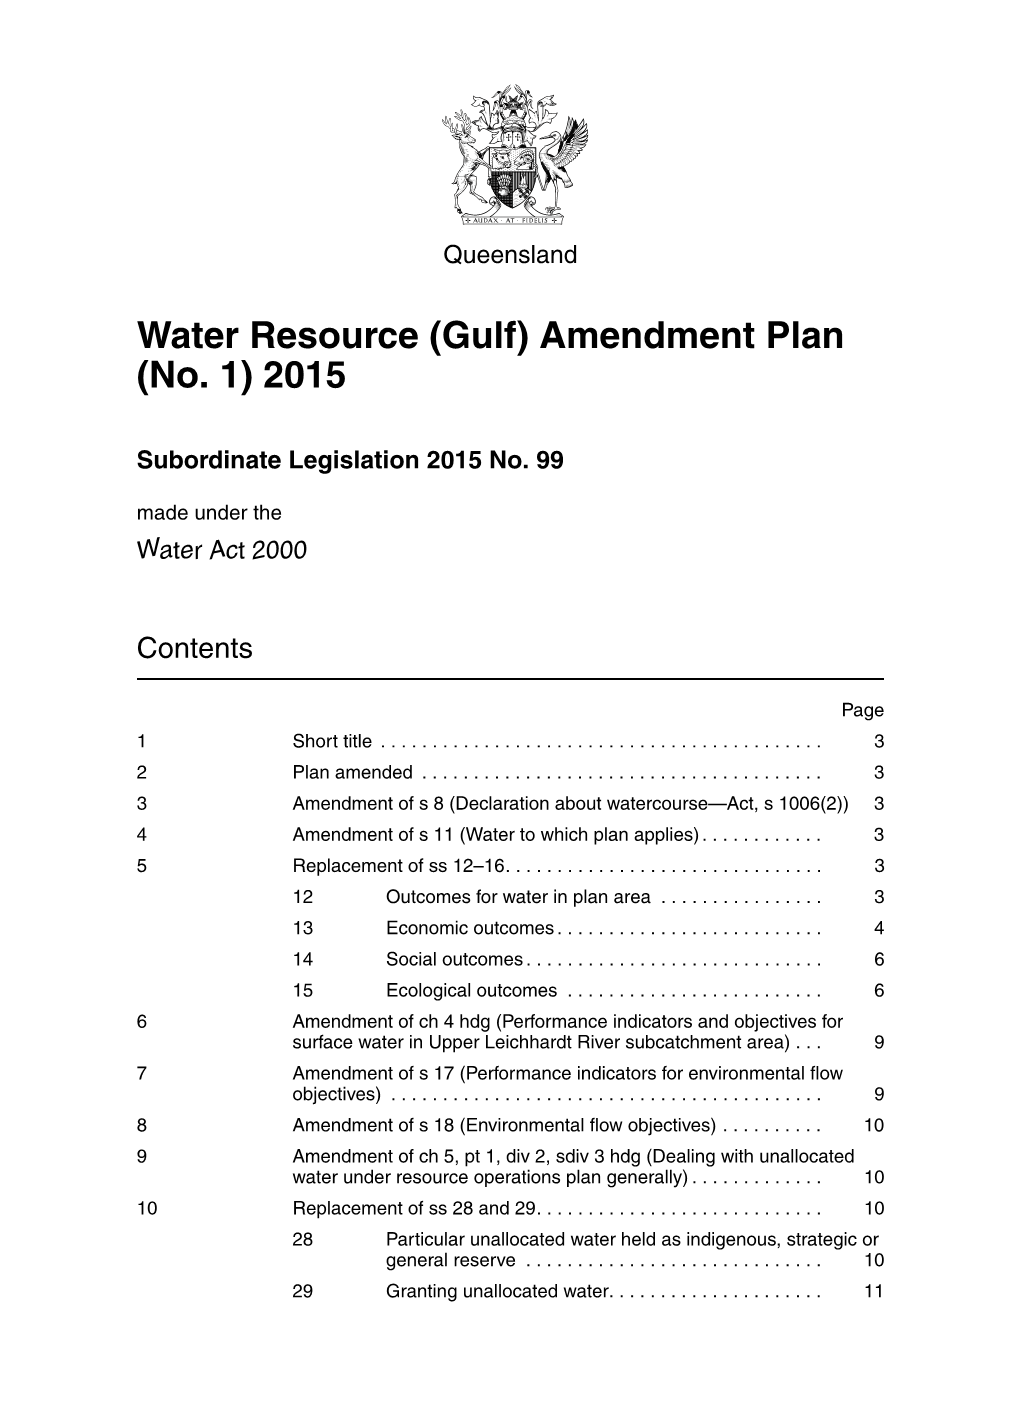 Water Resource (Gulf) Amendment Plan (No